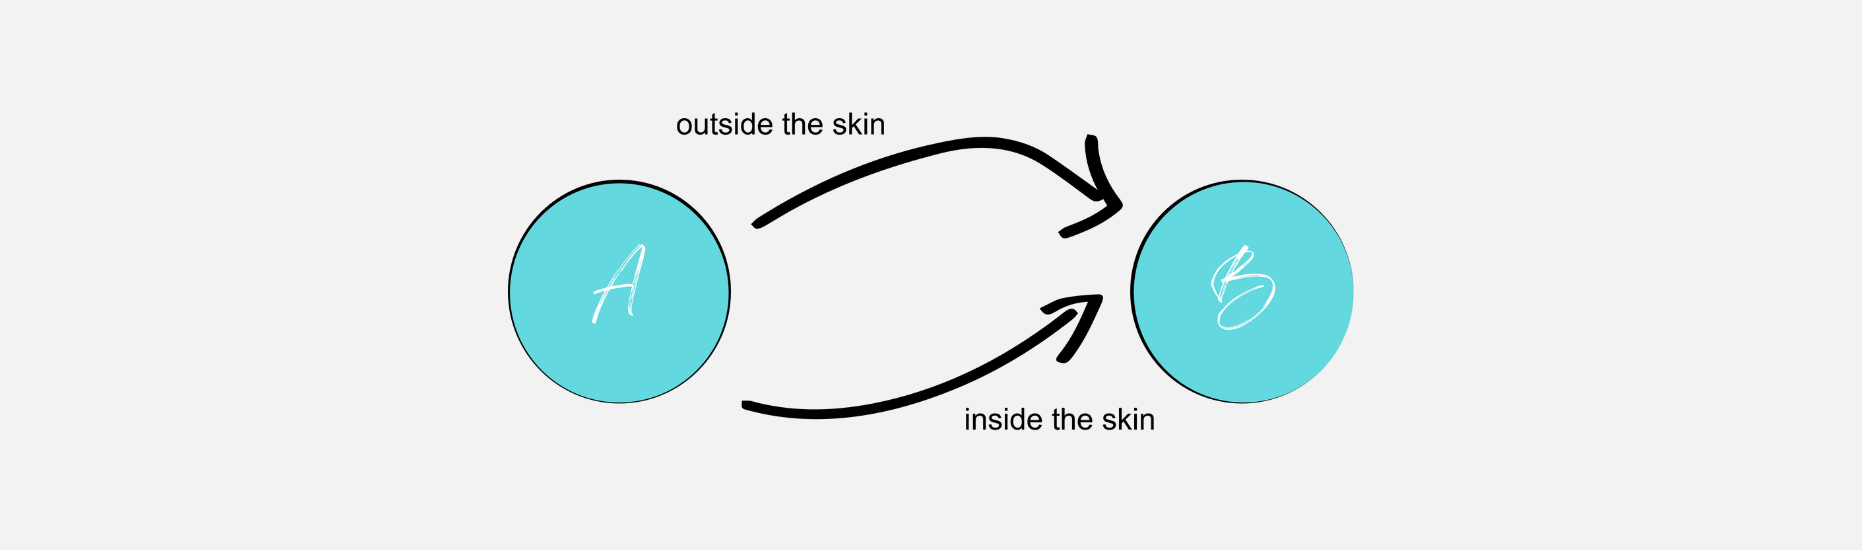 inside outside the skin